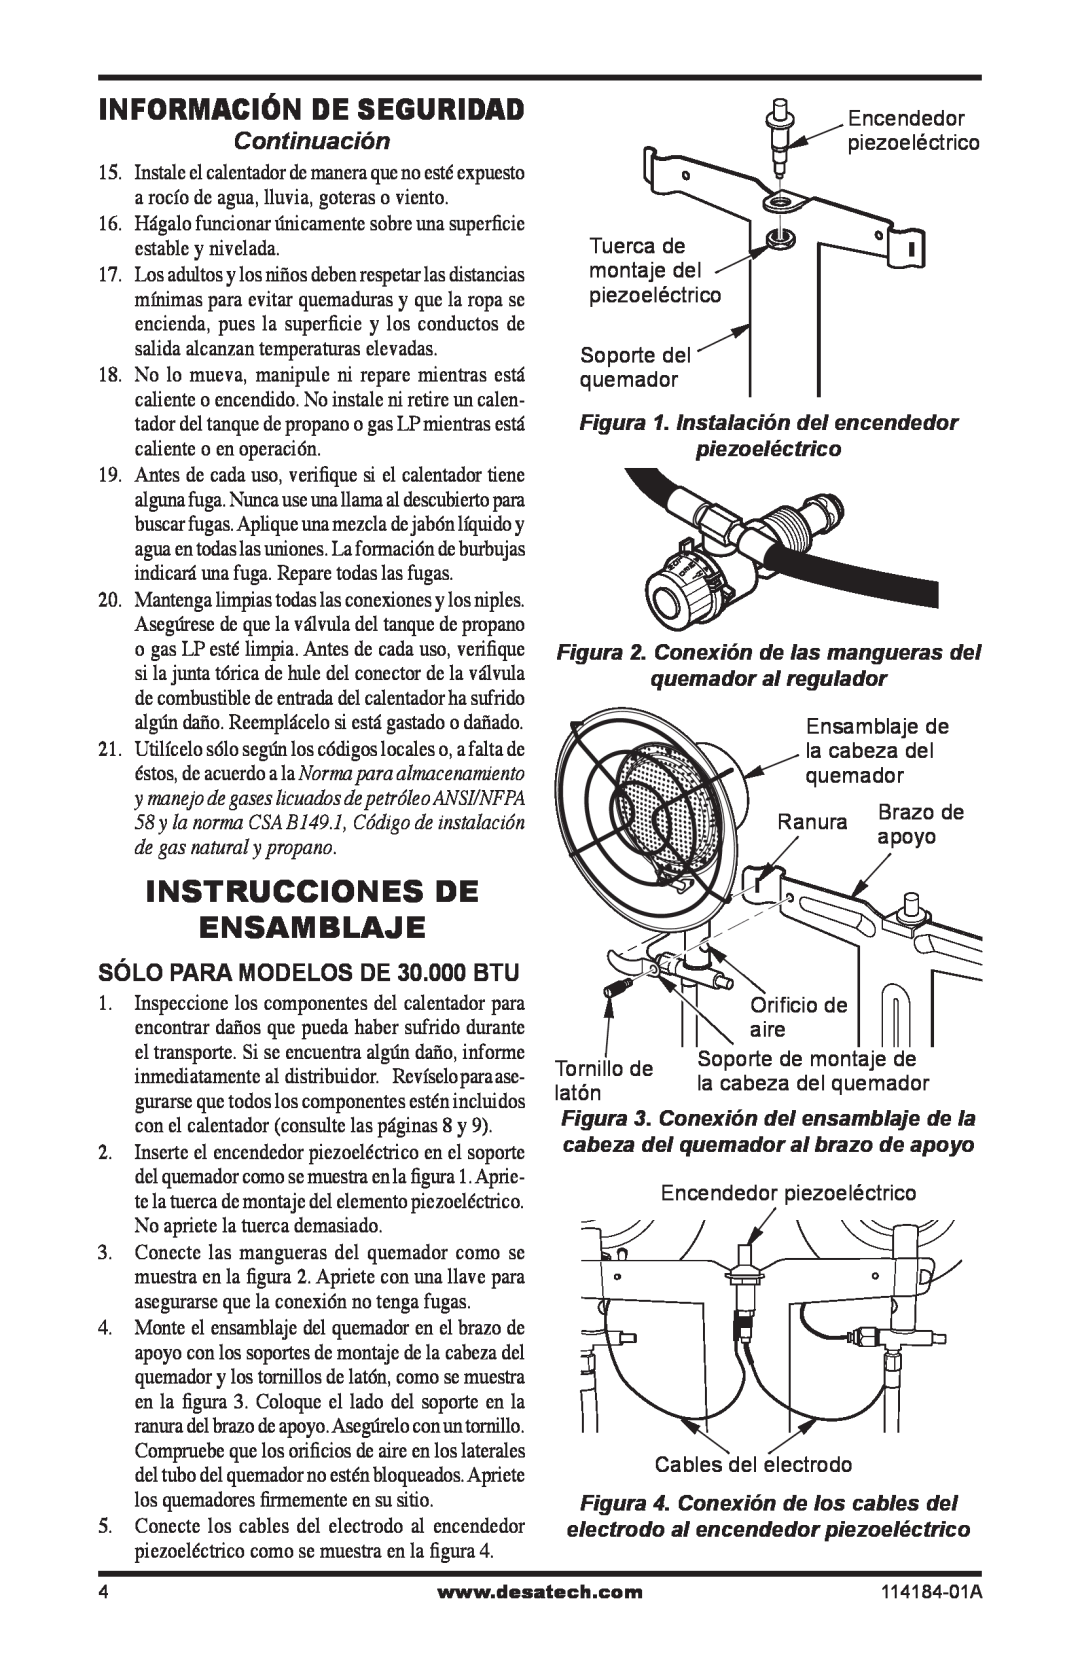 Desa N15 Instrucciones De Ensamblaje, Continuación, SÓLO PARA MODELOS DE 30.000 BTU, Figura 1. Instalación del encendedor 